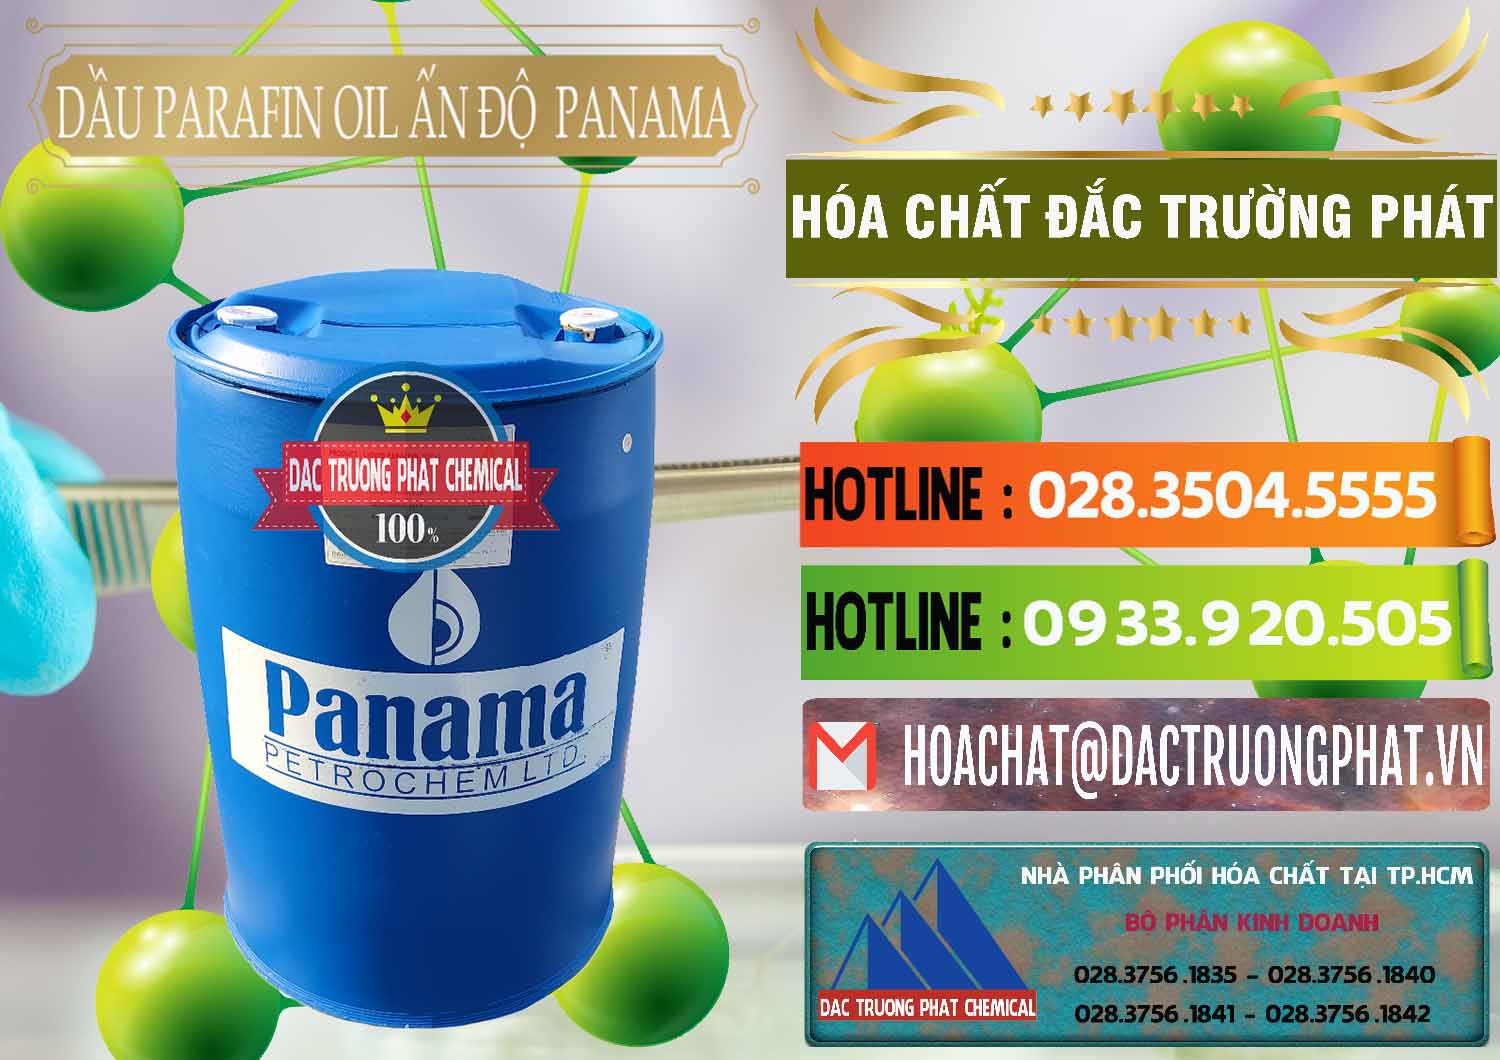 Nơi chuyên bán & cung cấp Dầu Parafin Oil Panama Ấn Độ India - 0061 - Nhà phân phối & cung cấp hóa chất tại TP.HCM - cungcaphoachat.com.vn